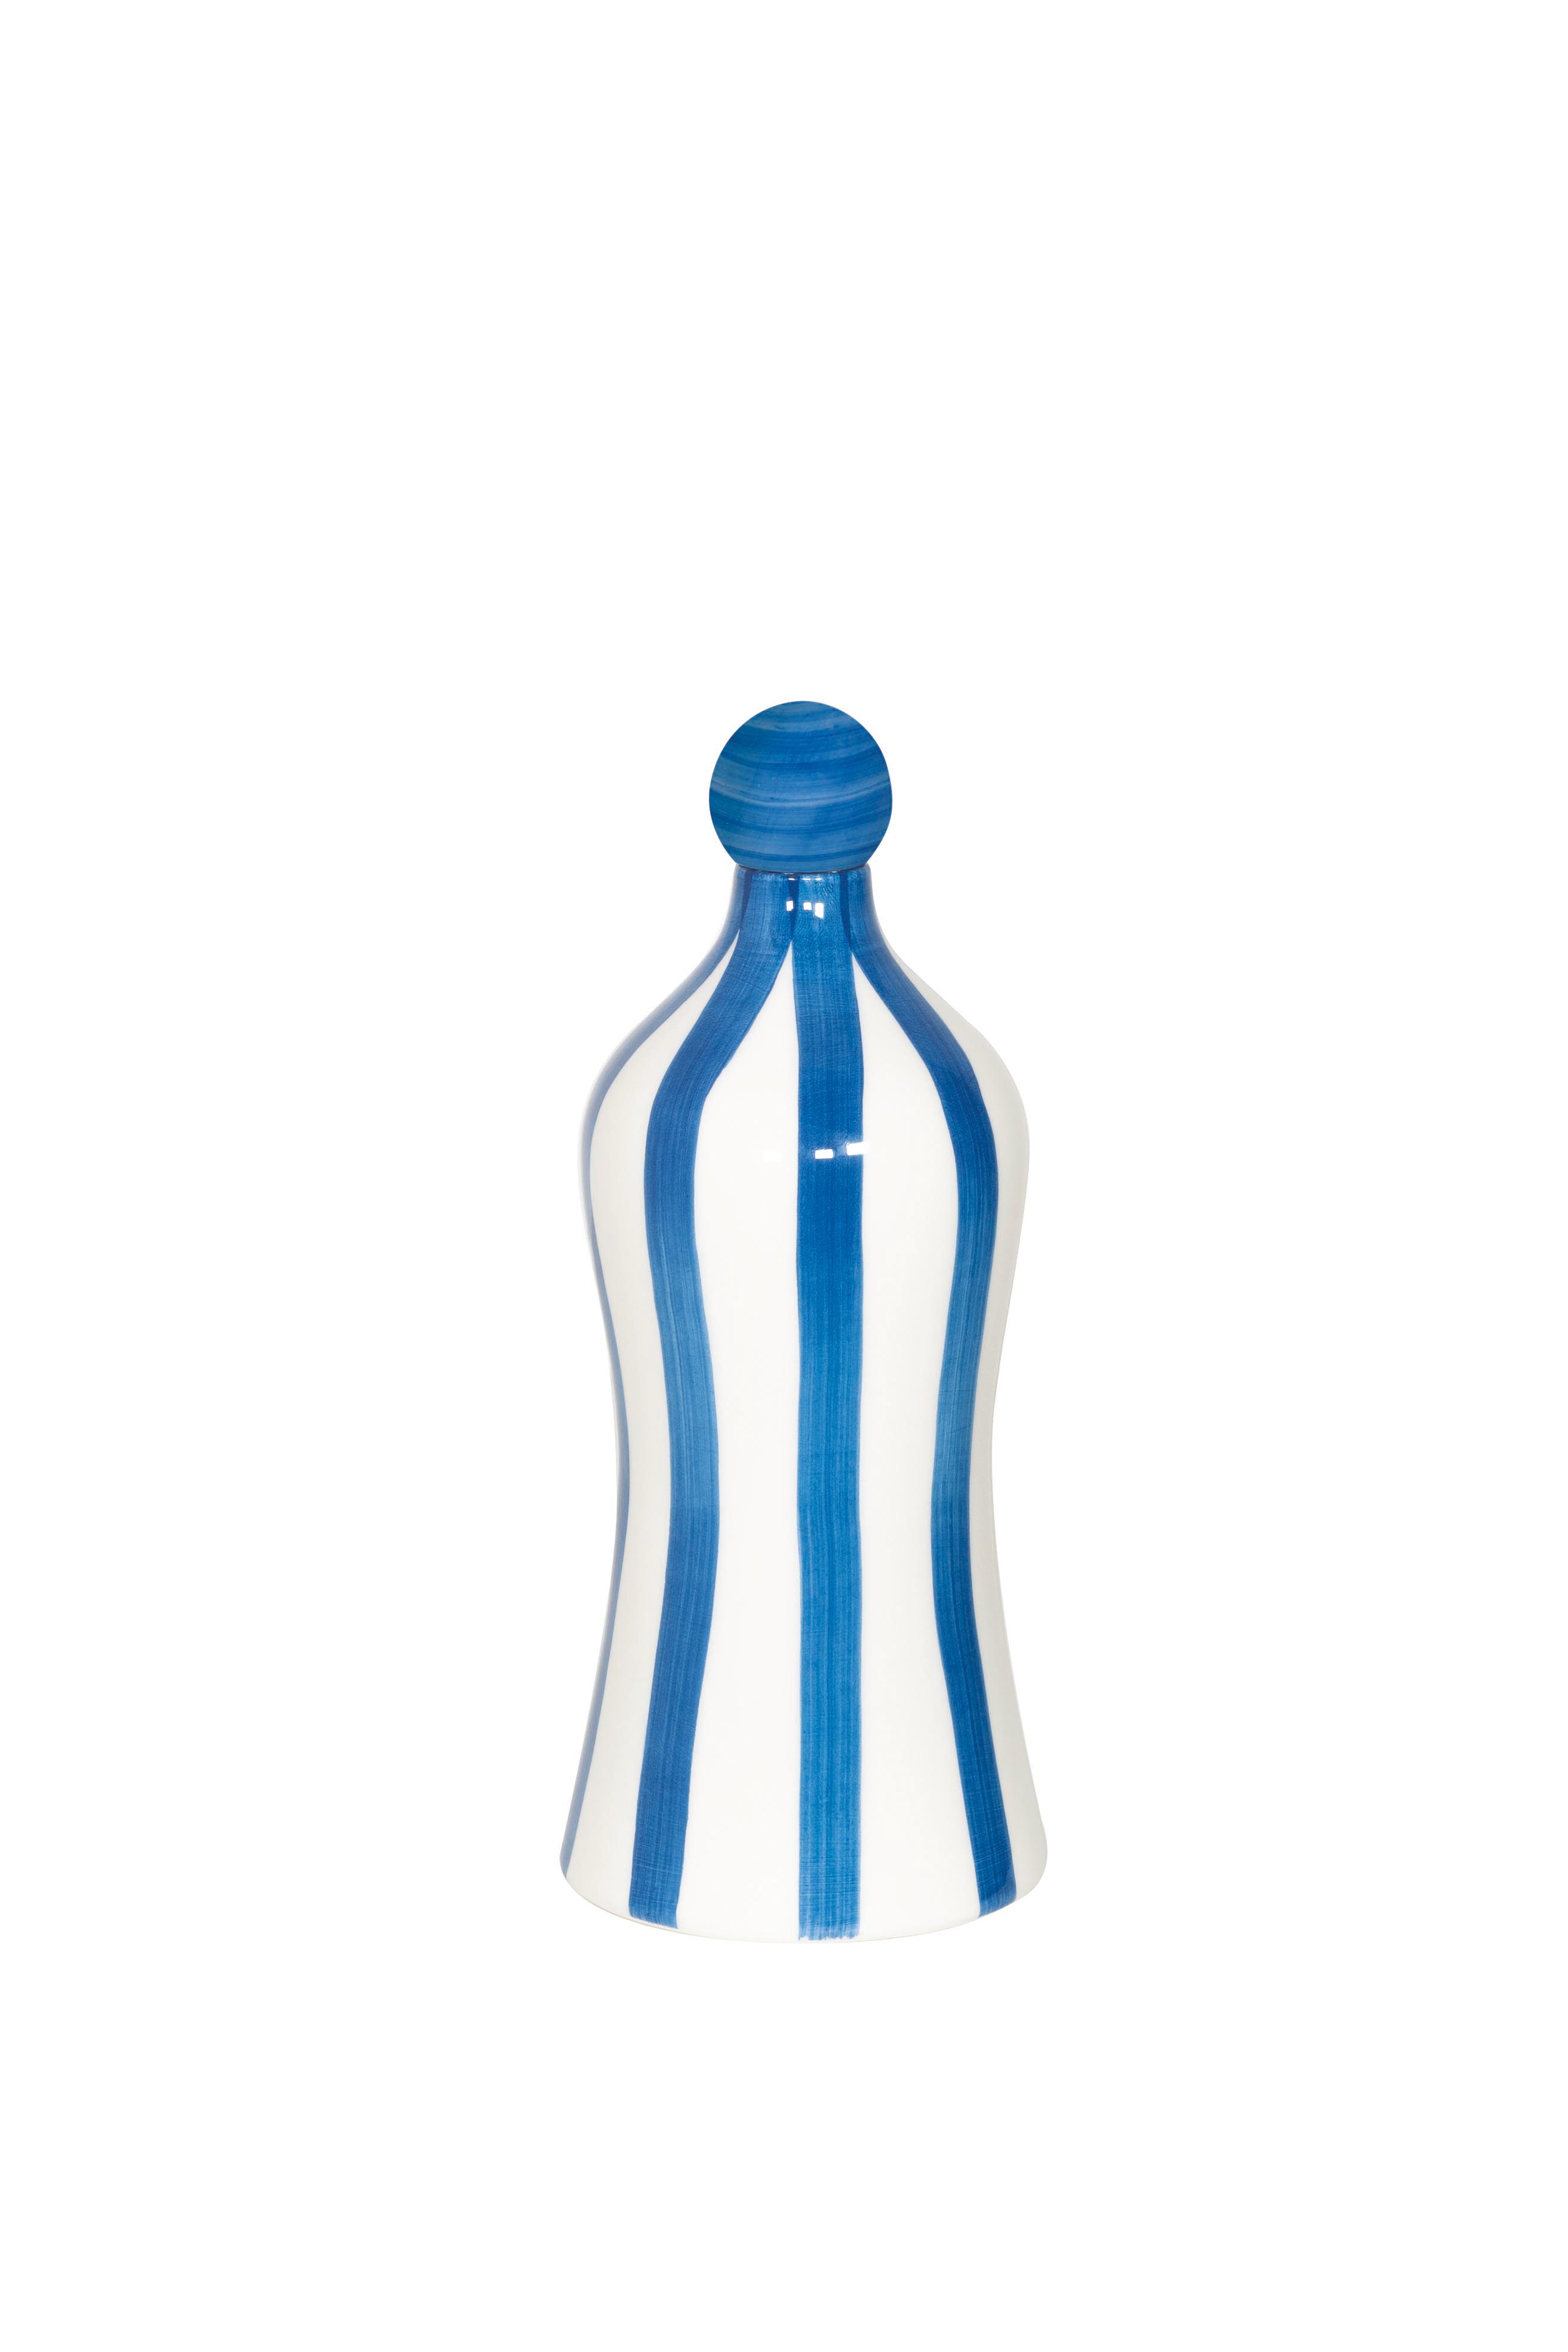 Zafferano Poldina Stopper Blu Avio / Avio Blue + Lido Keramik Flasche mit vertikalen Streifen in Blau